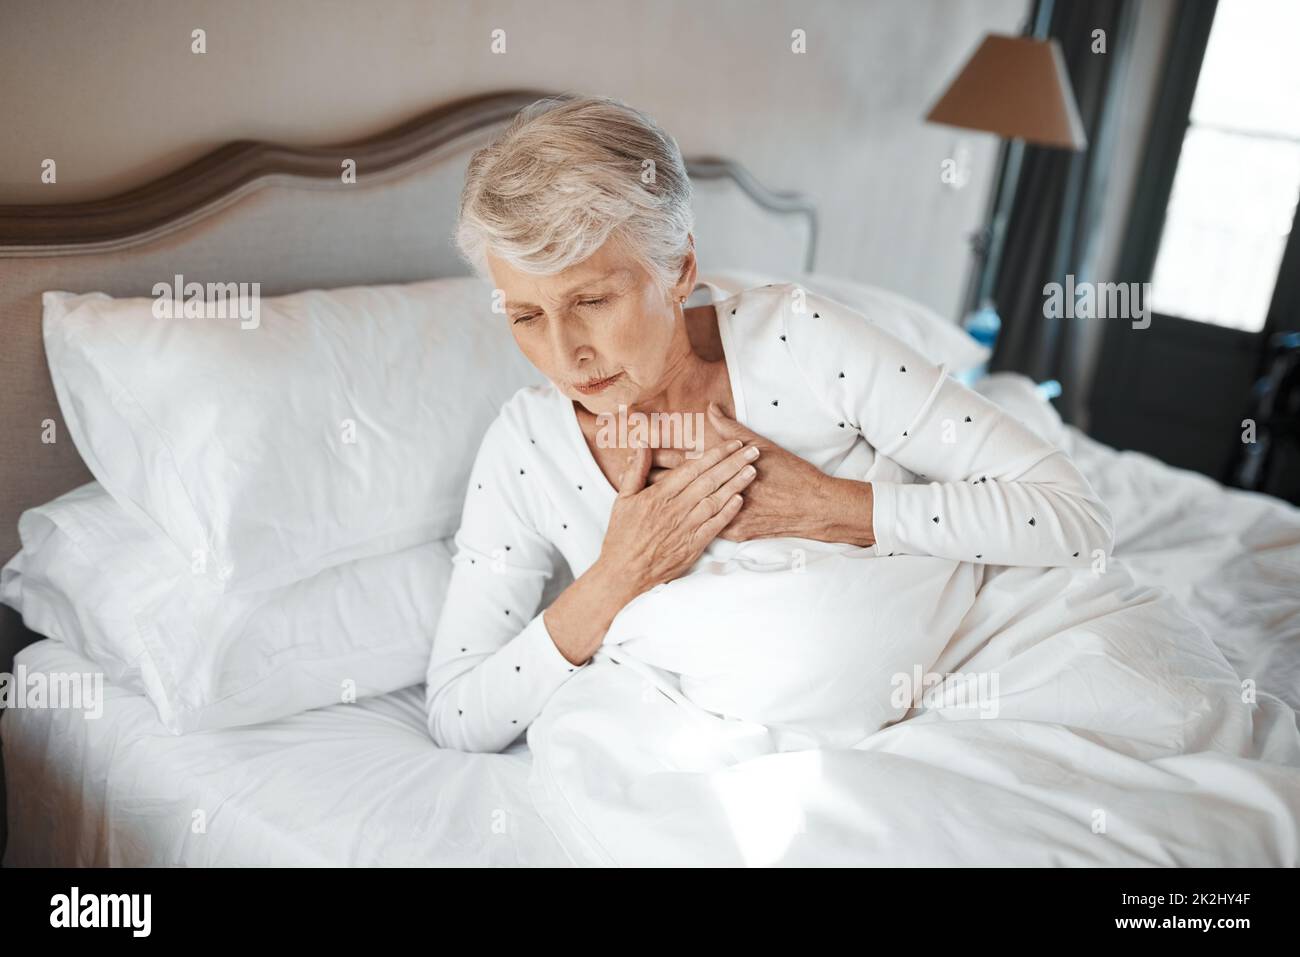 Personne n'est à l'abri.Prise de vue d'une femme âgée souffrant de douleurs thoraciques au lit dans une maison de soins infirmiers. Banque D'Images